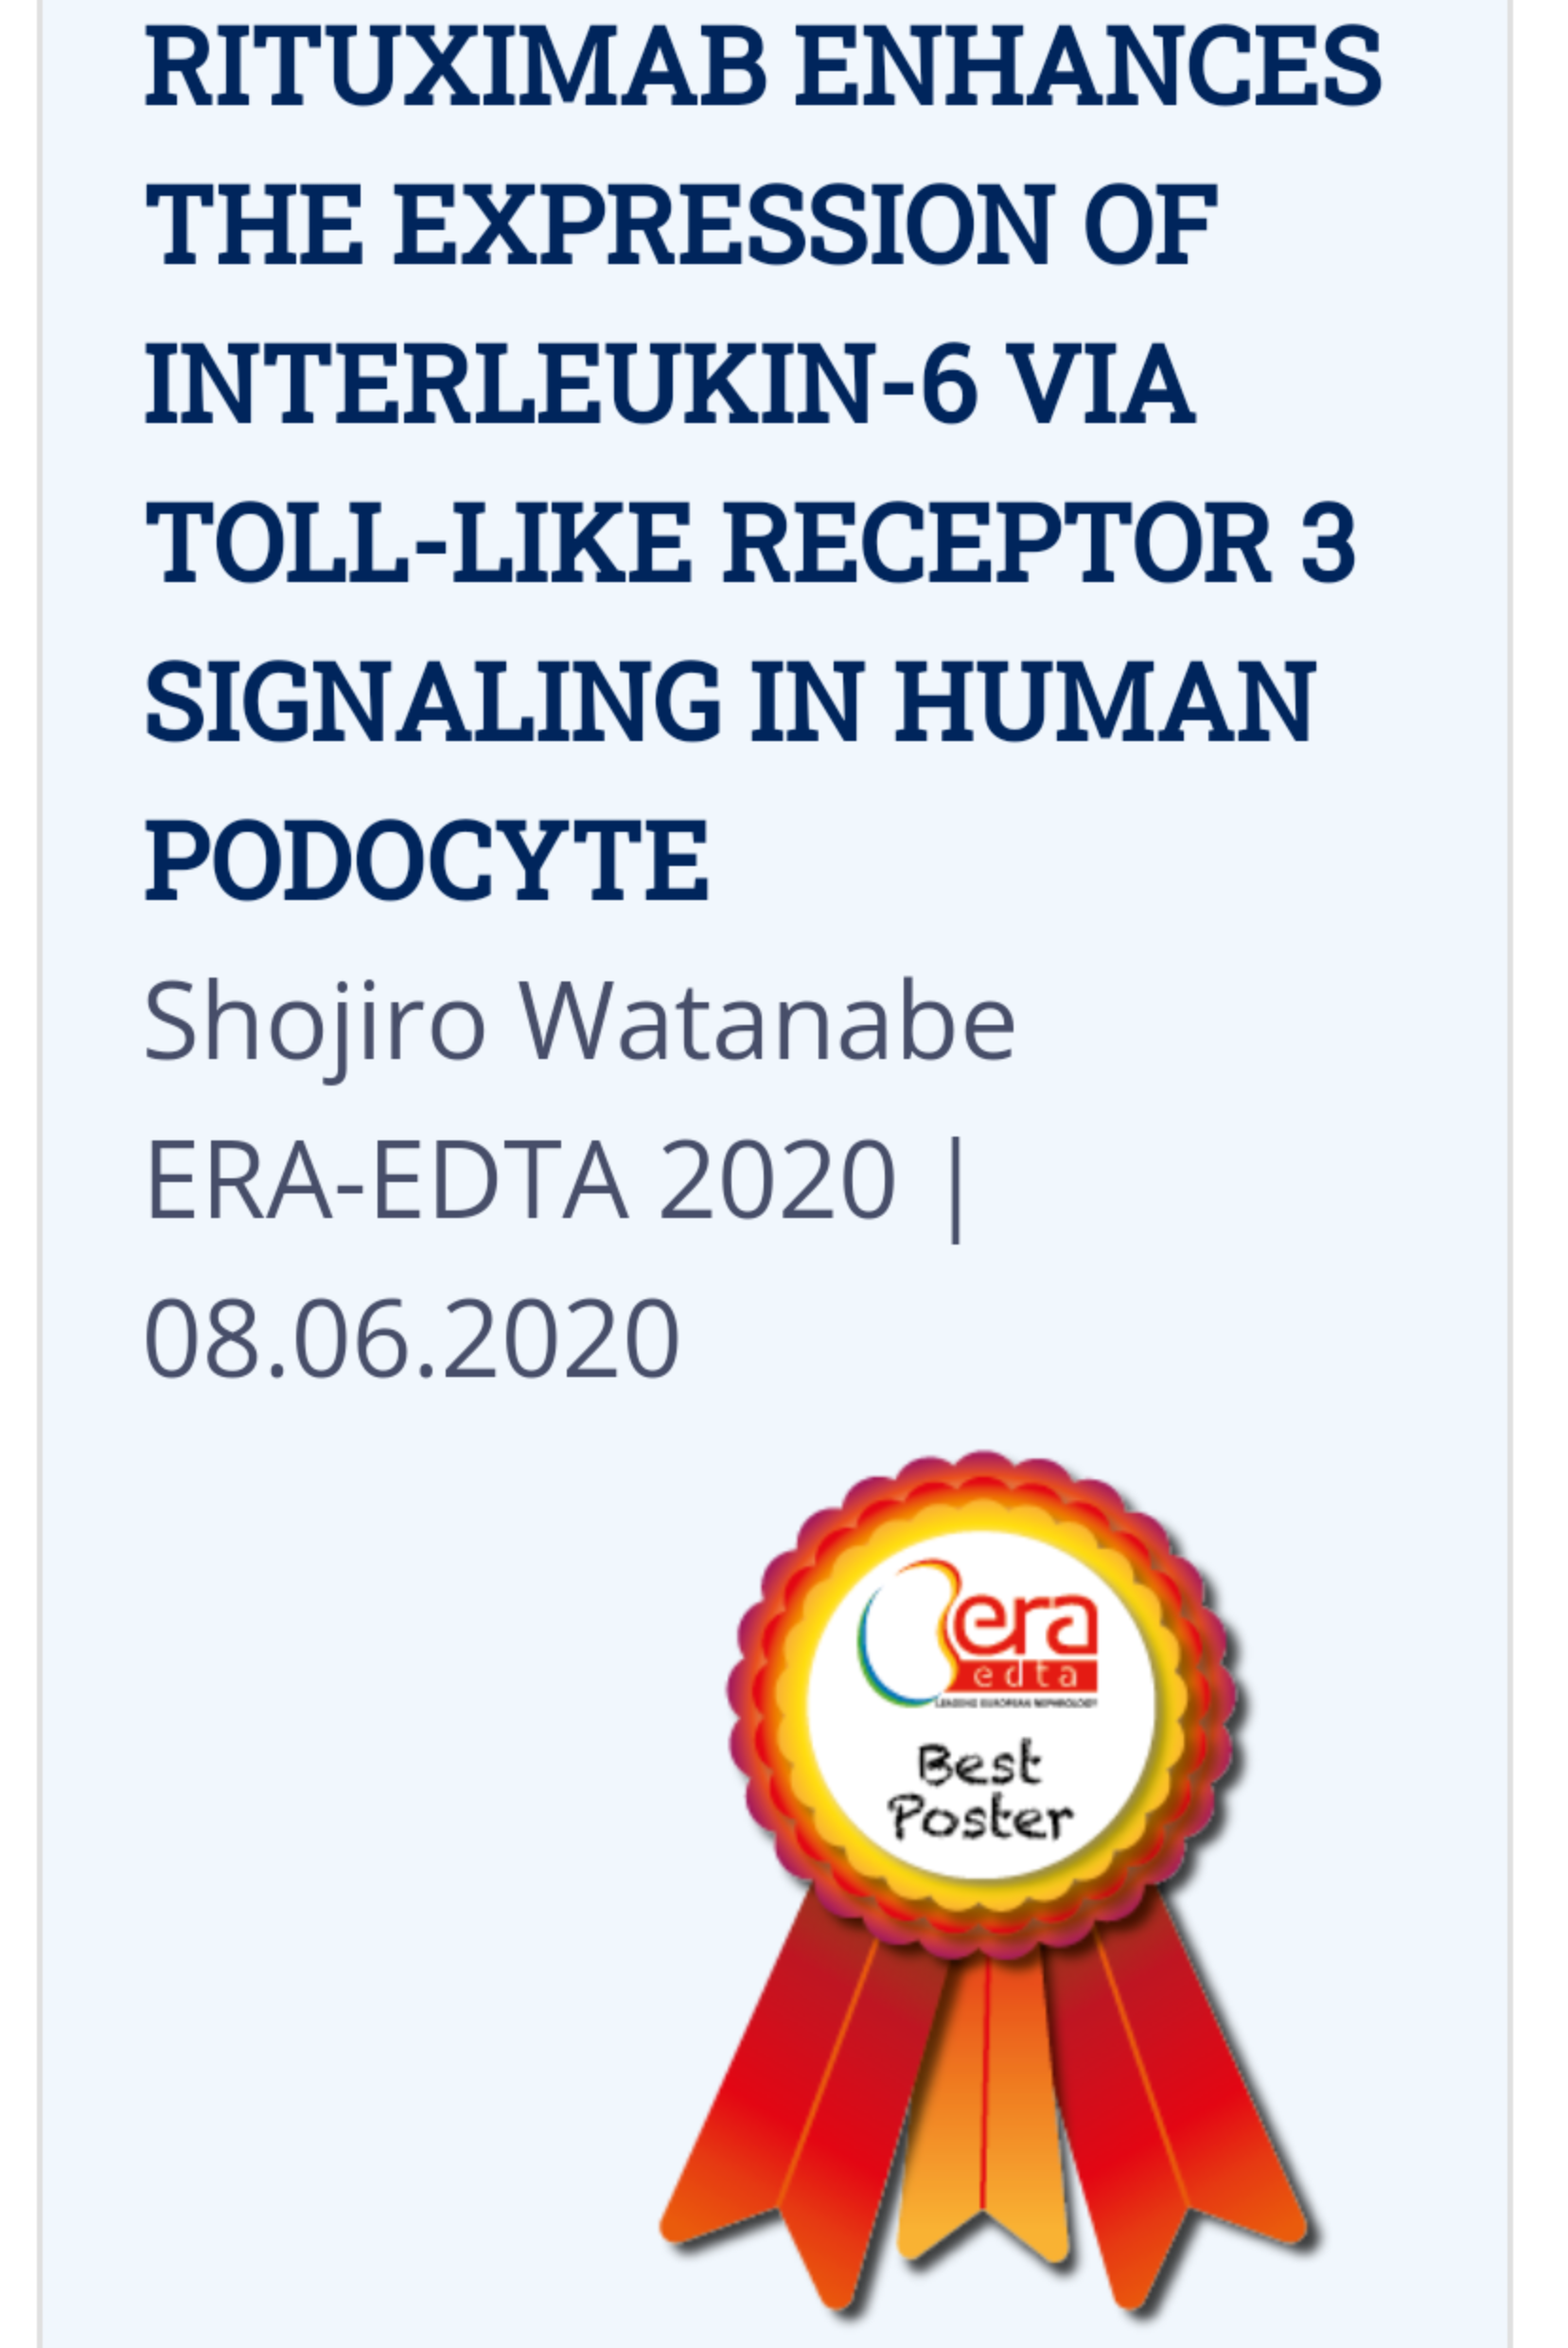 ERA EDTA 2020 virtual congress.png